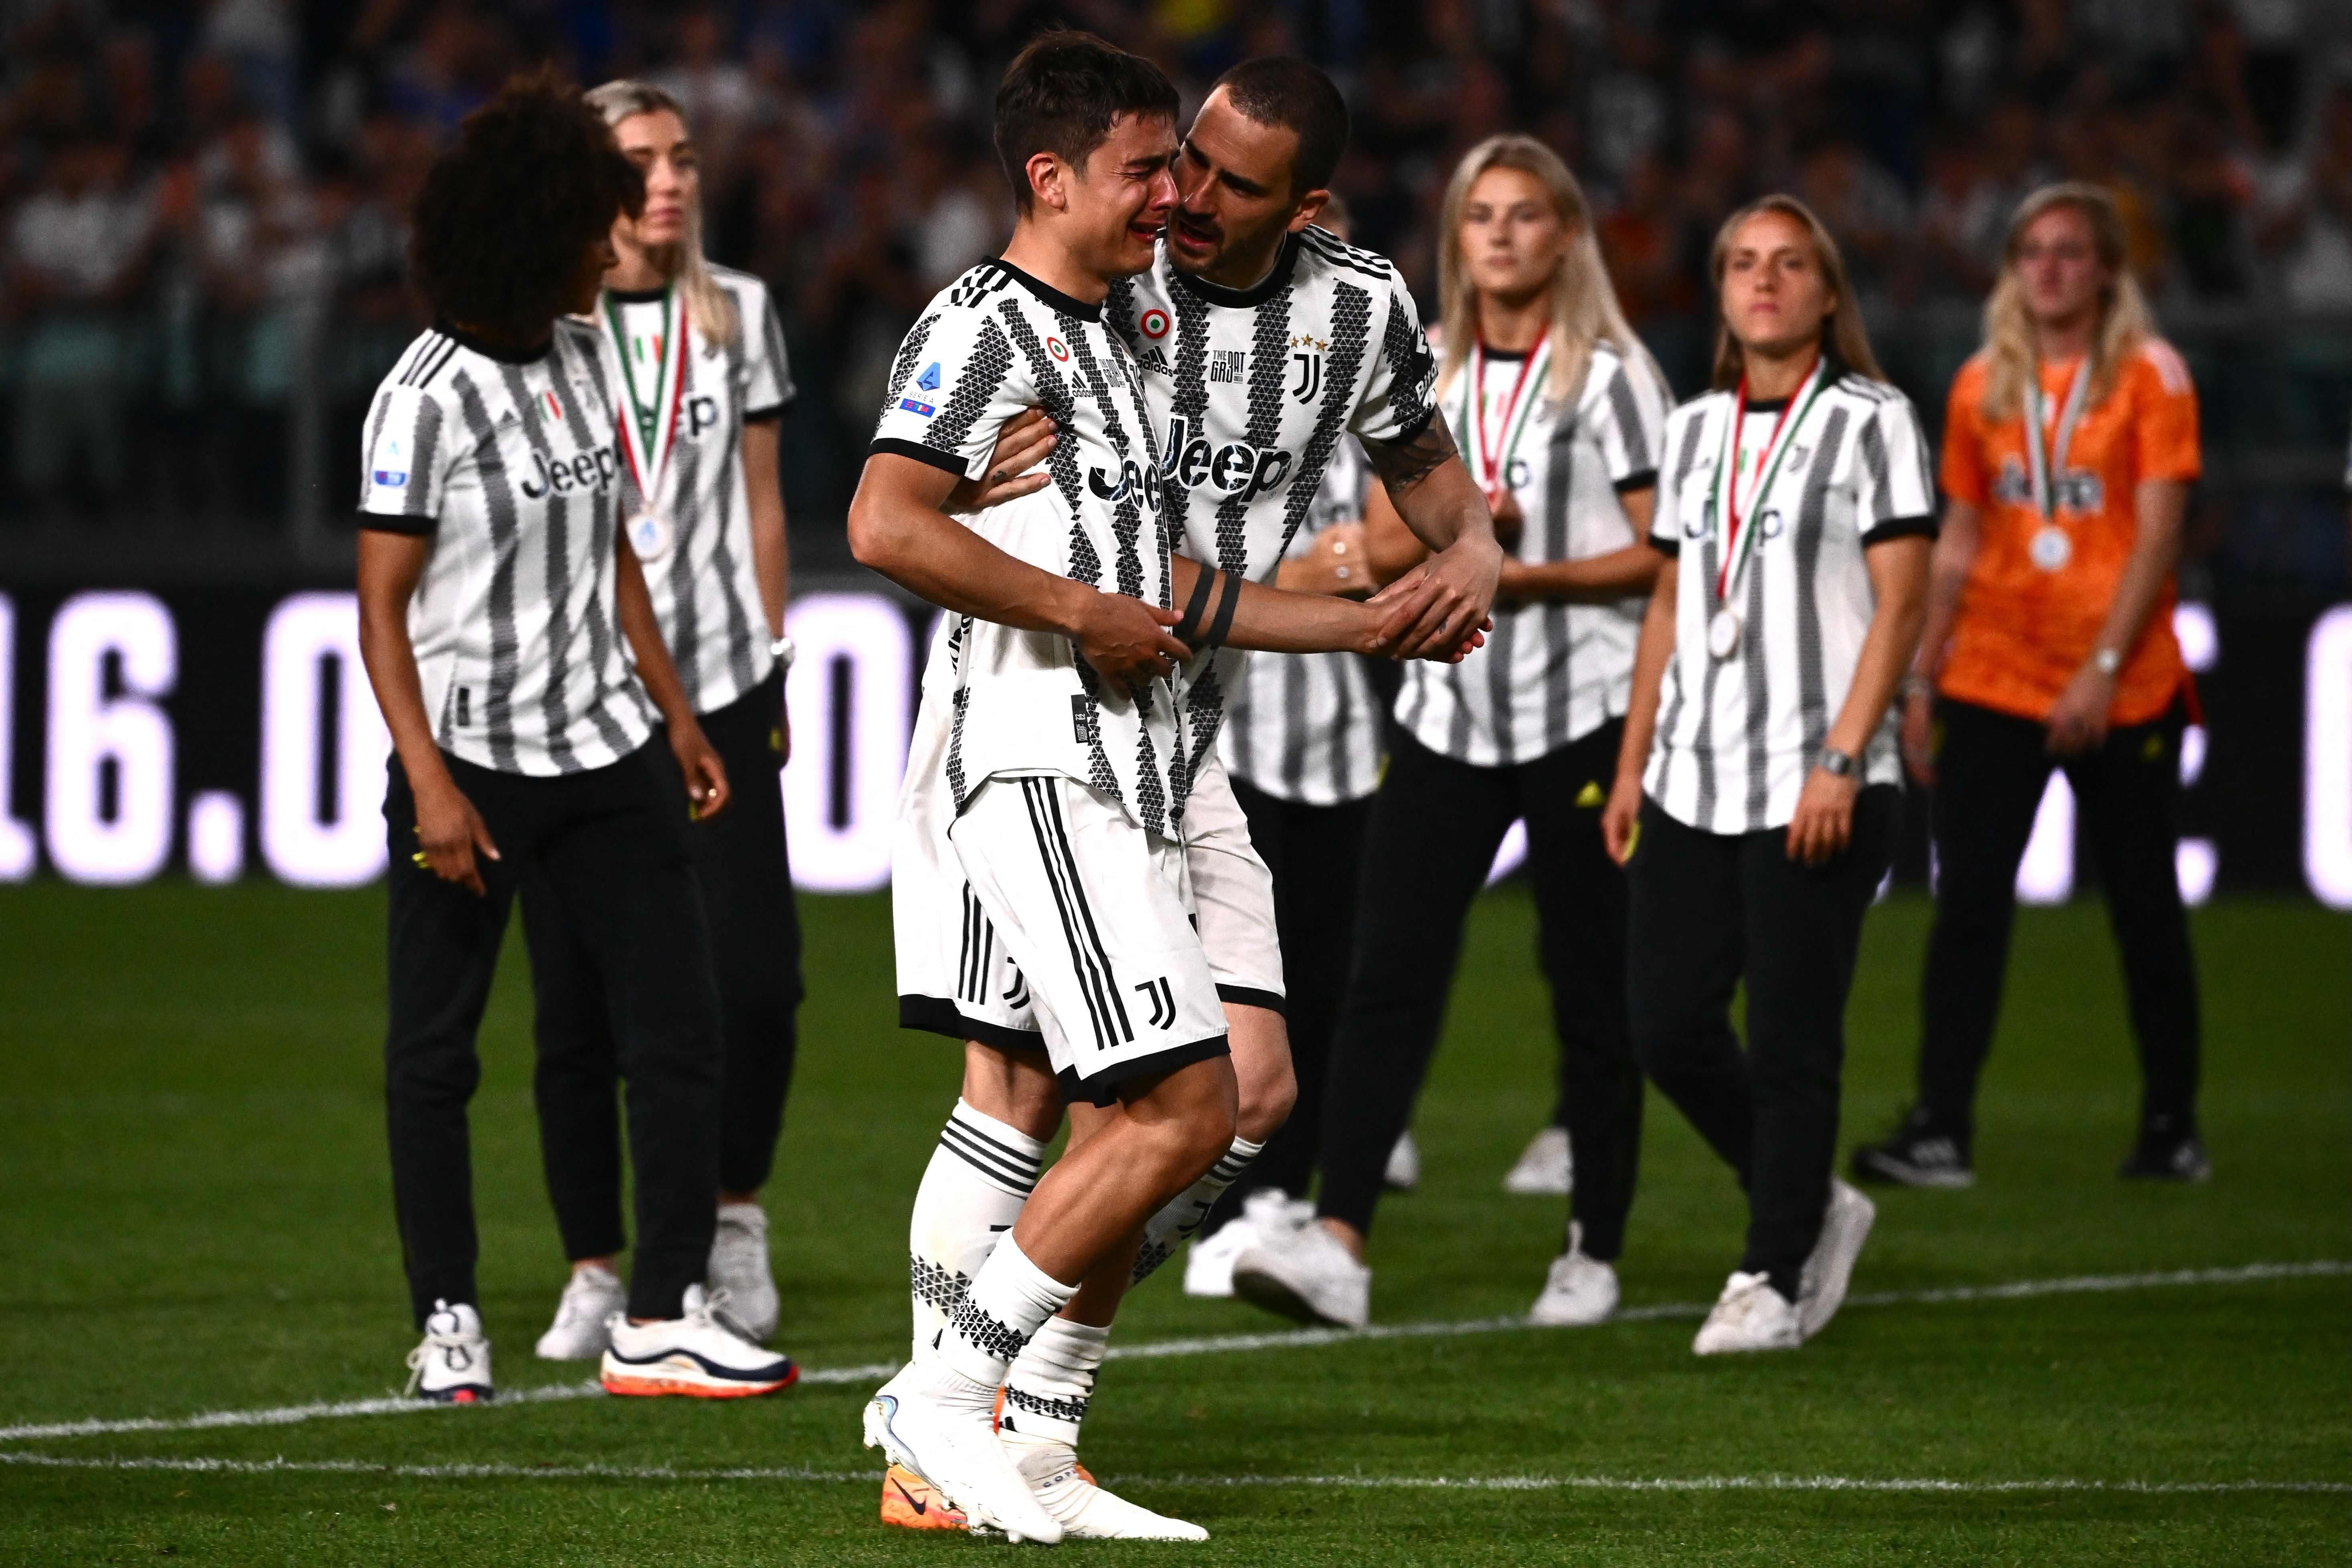 (ÖZET) Juventus - Lazio maç sonucu: 2-2